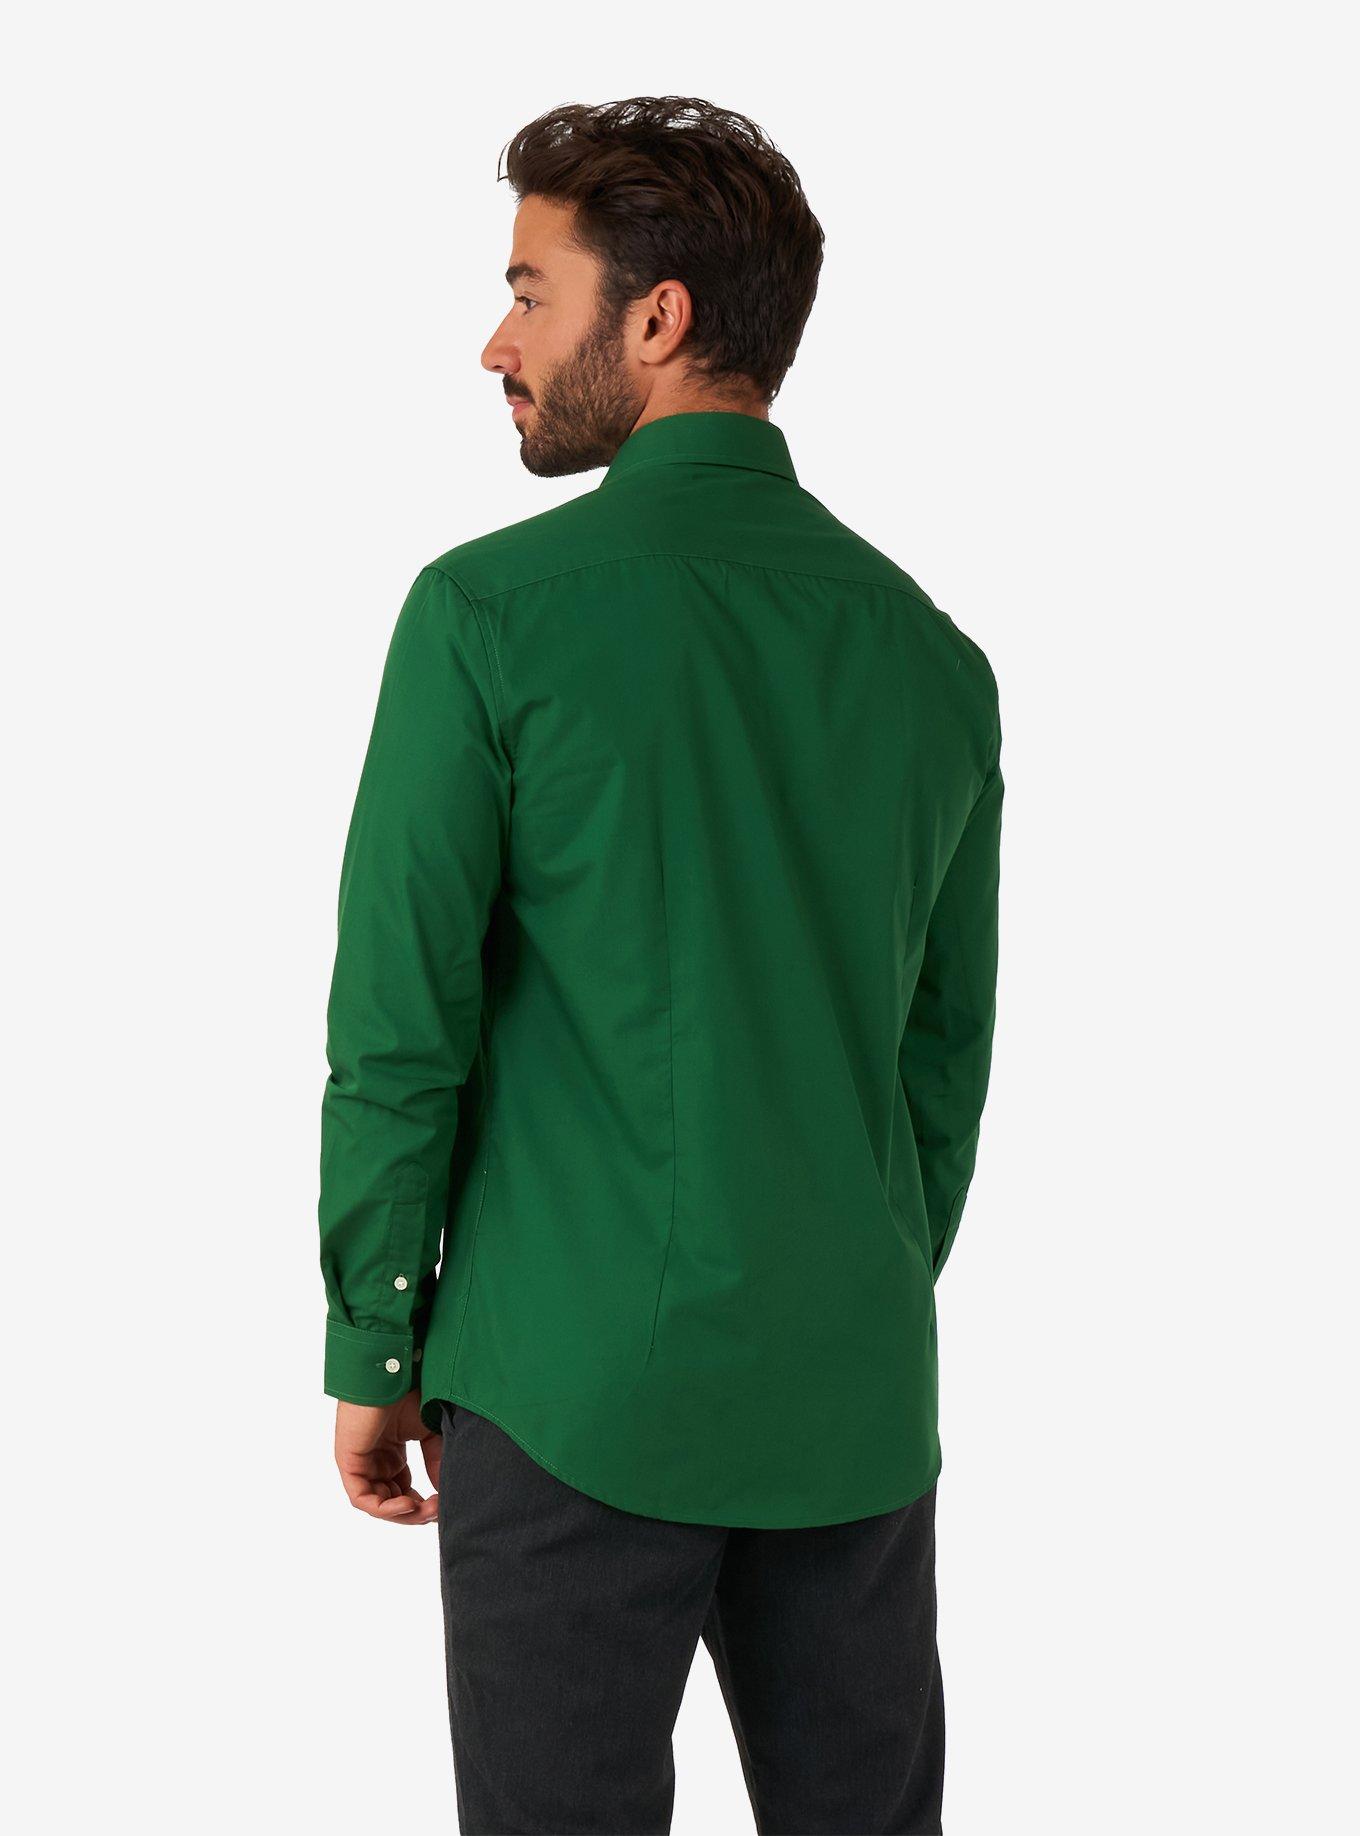 Glorious Green Long Sleeve Button-Up Shirt, GREEN, alternate